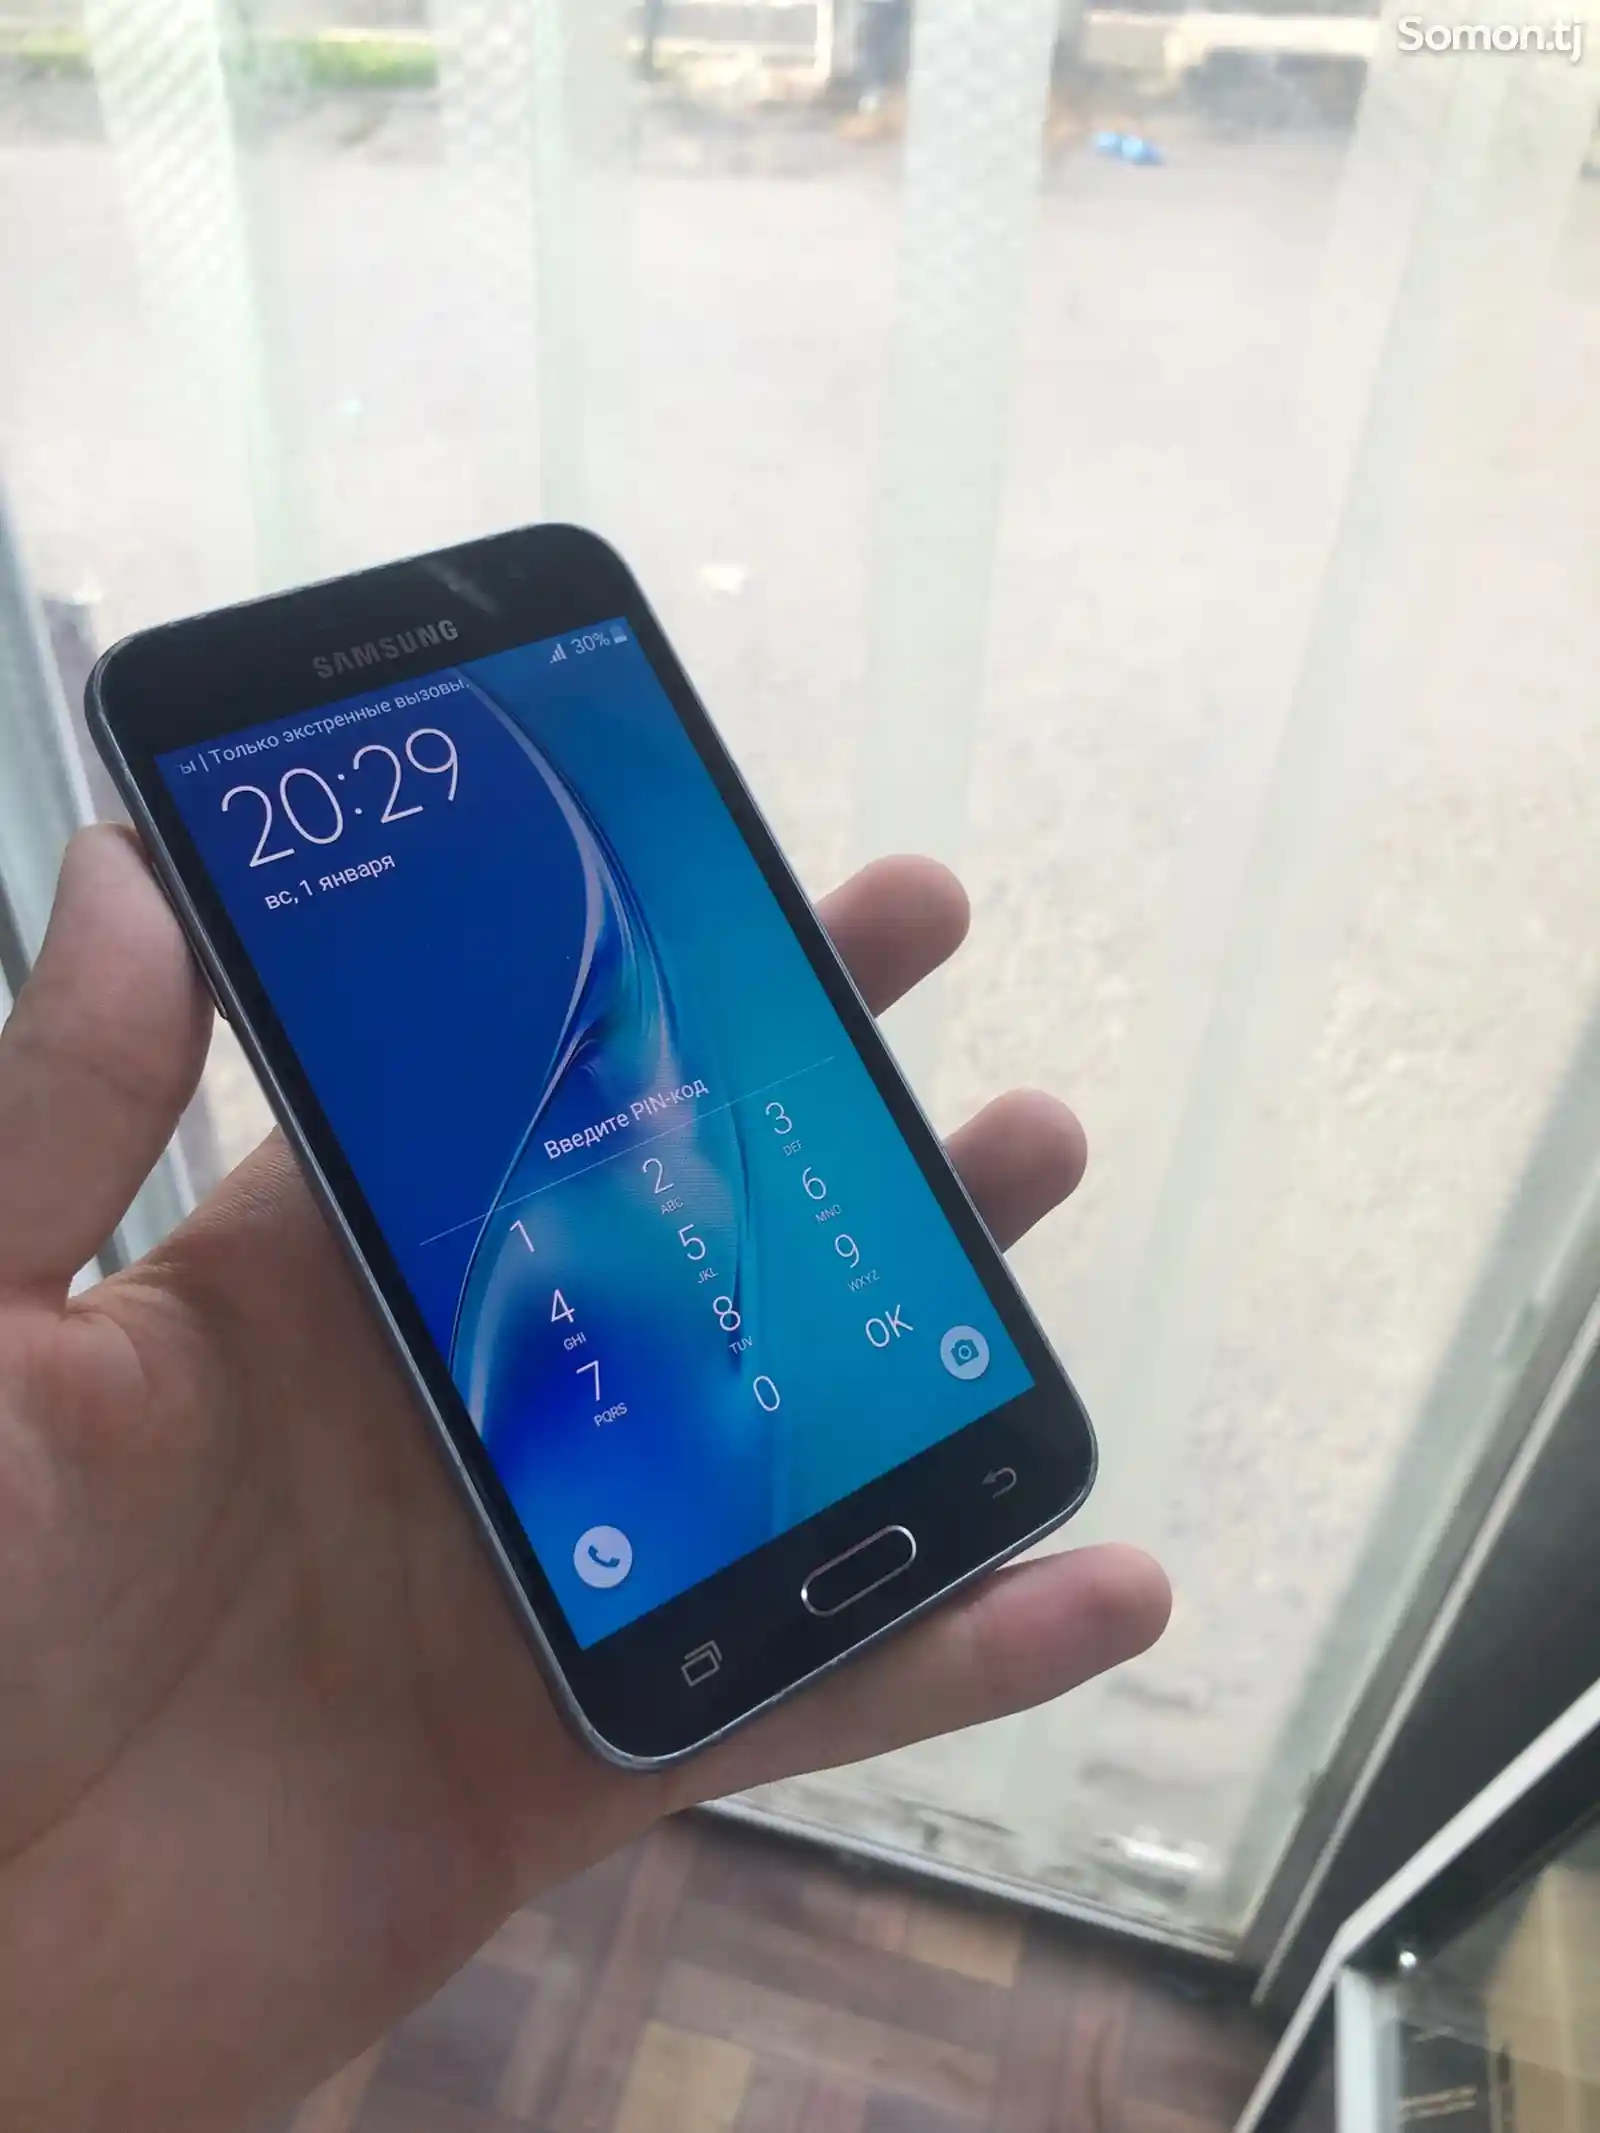 Samsung Galaxy J3 2016-1